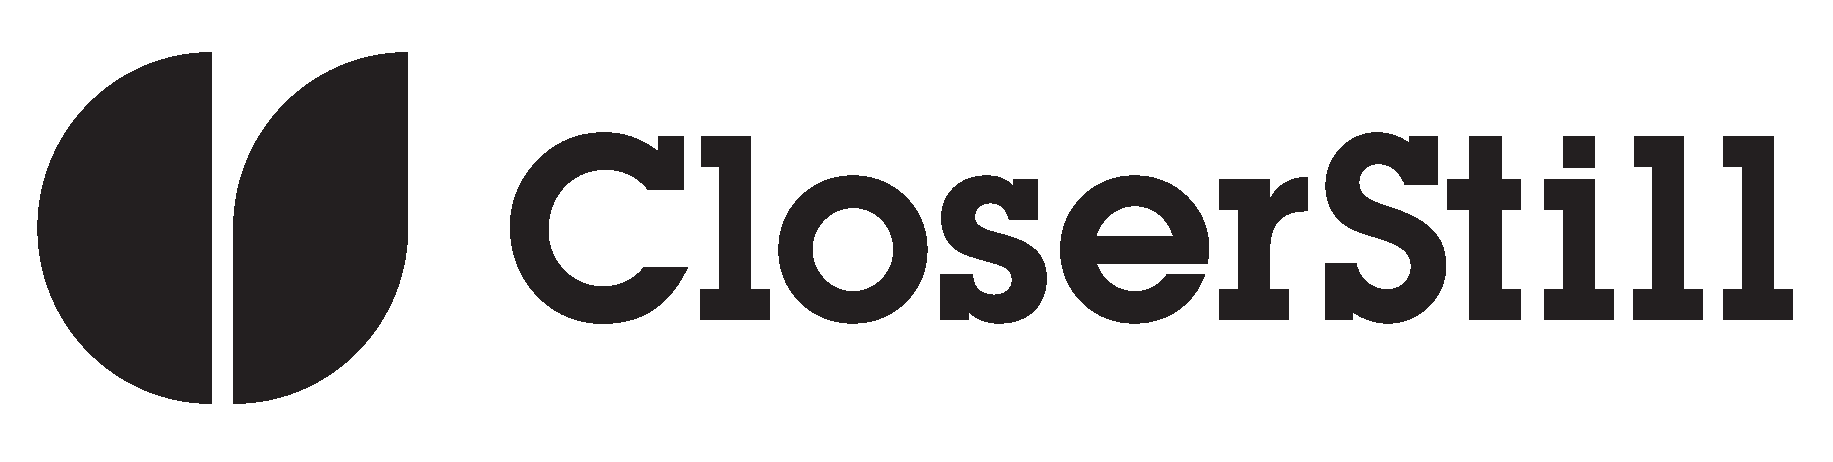 CloserStill Media Logo